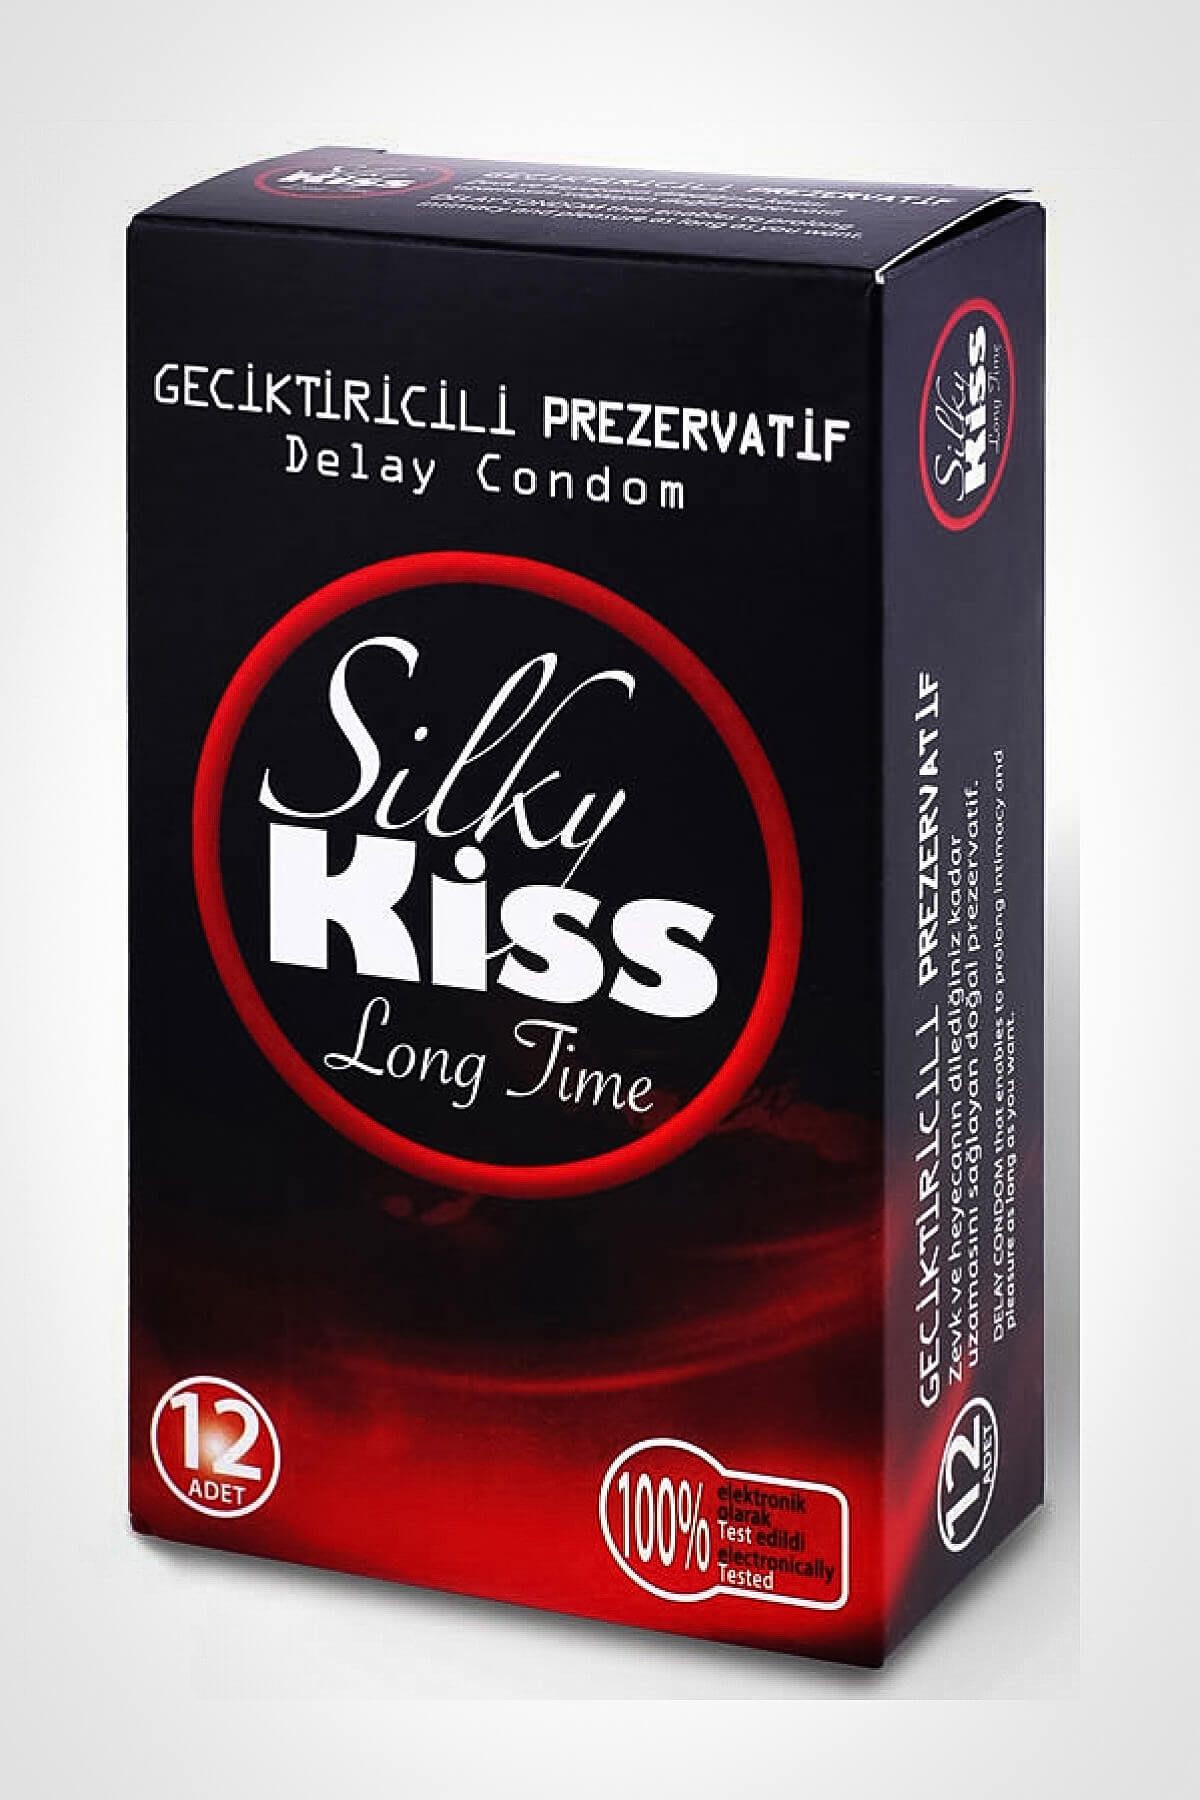 Silky Kiss Uzun geceler Prezervatif Long Time 12 Adet Condom